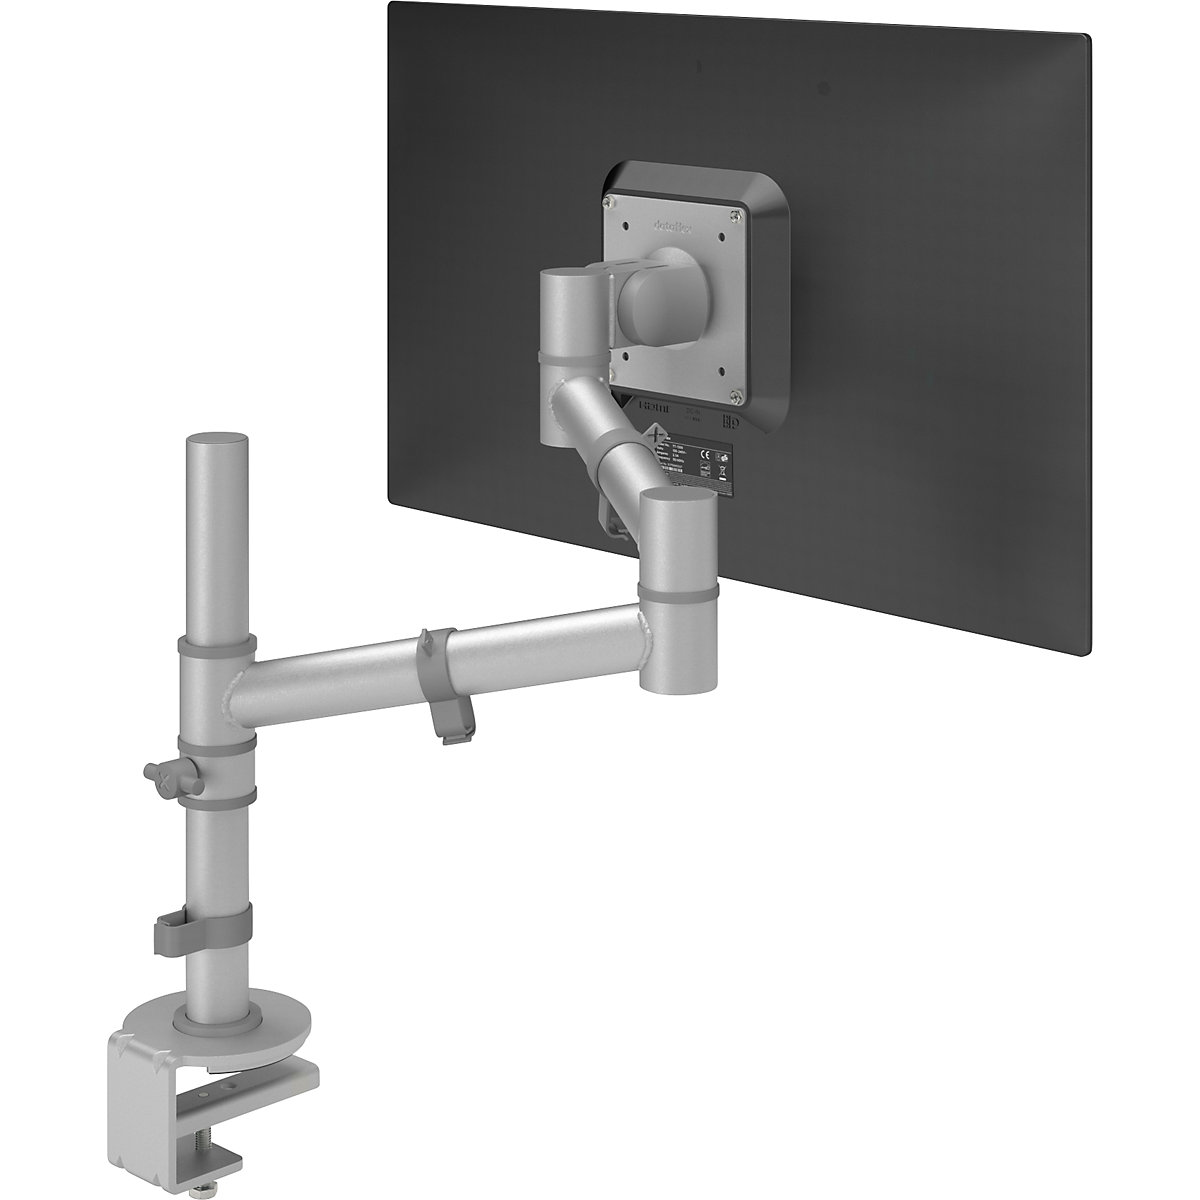 VIEWGO monitortartó kar – Dataflex, szimpla kar 1 monitorhoz, ezüst-11